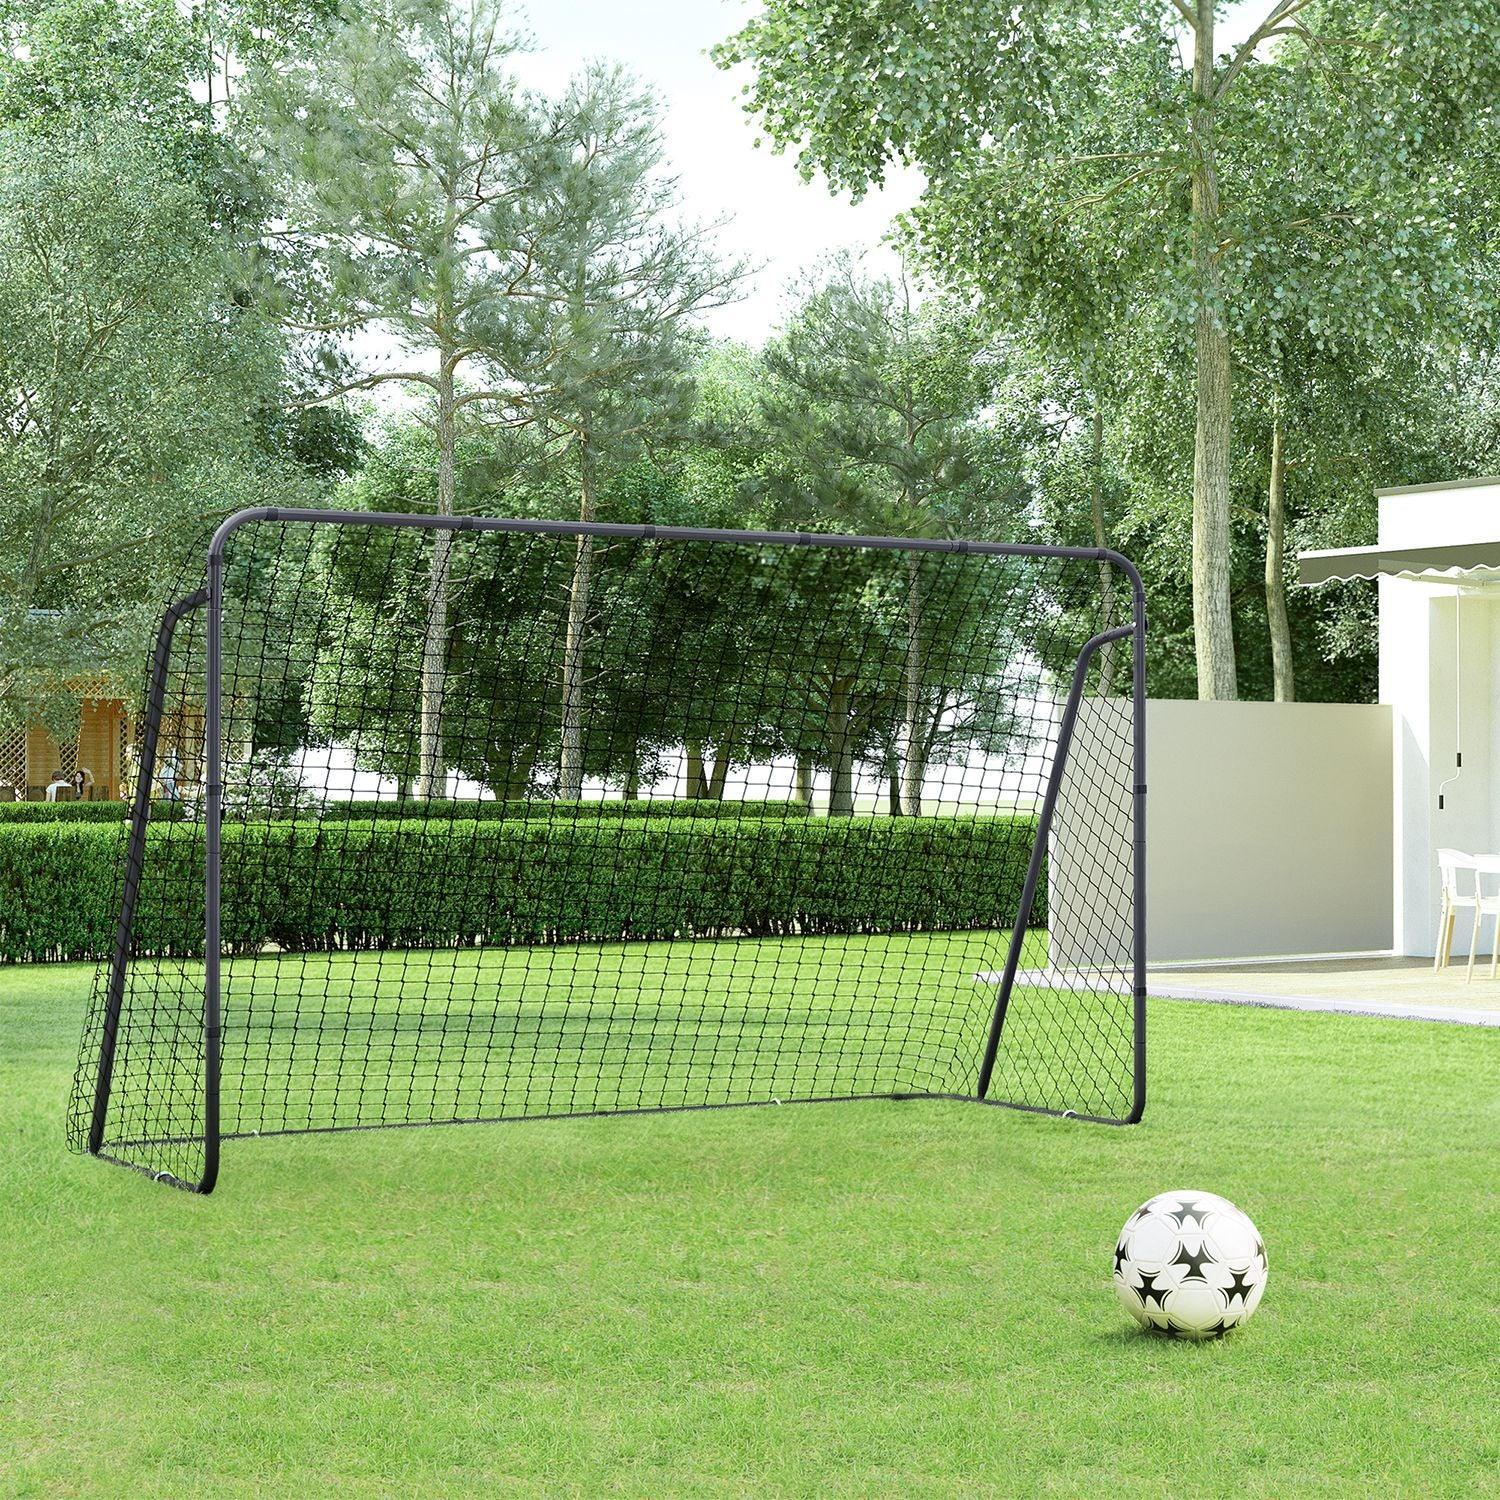 Backyard Soccer Goal for Children FredCo